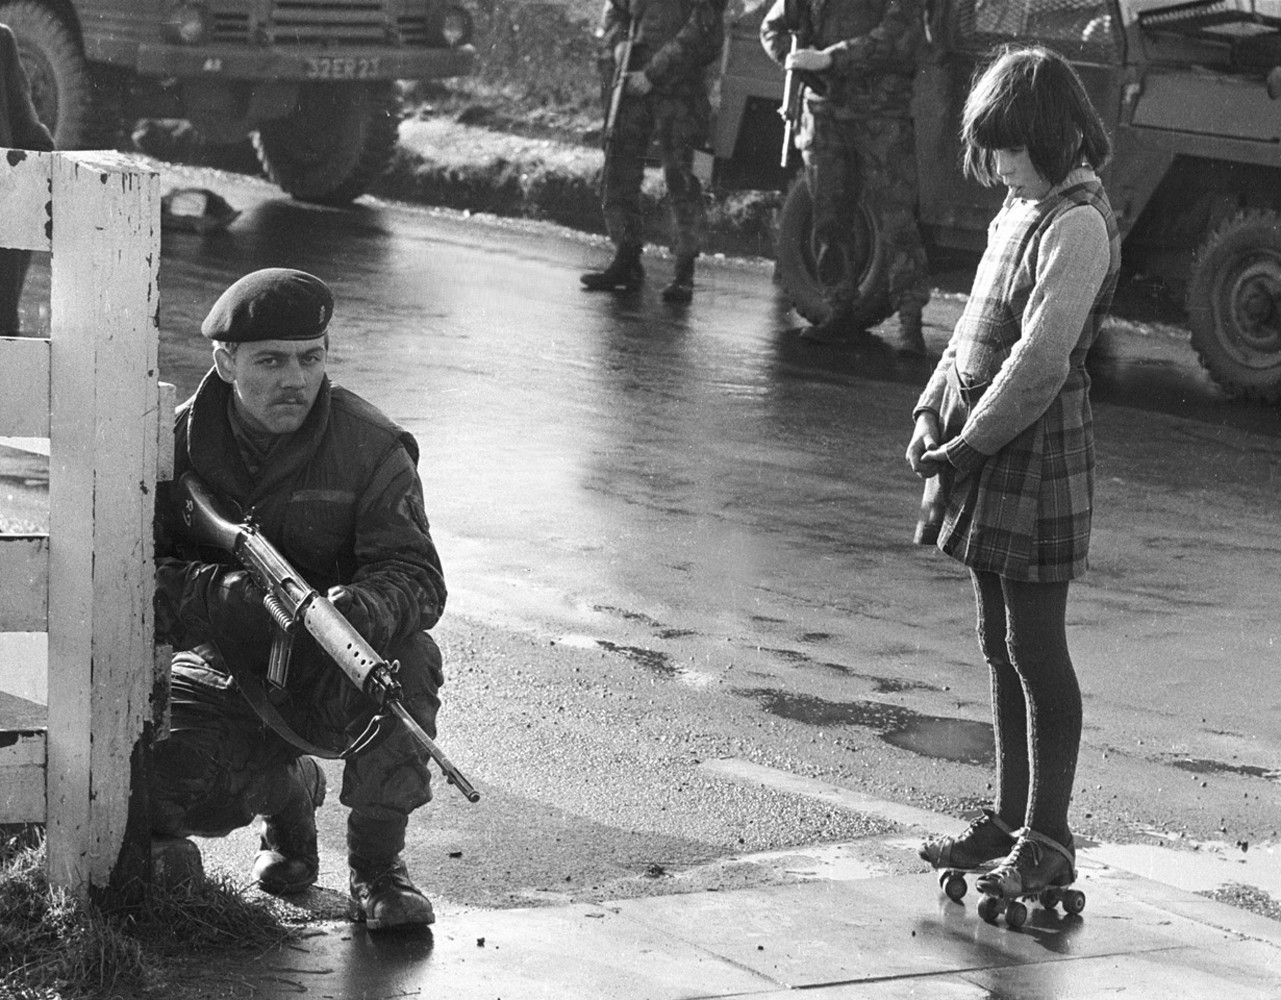 1969. Kíváncsi lány bámulja a járőröző angol katonát az Észak-ír zavargások idején..jpg